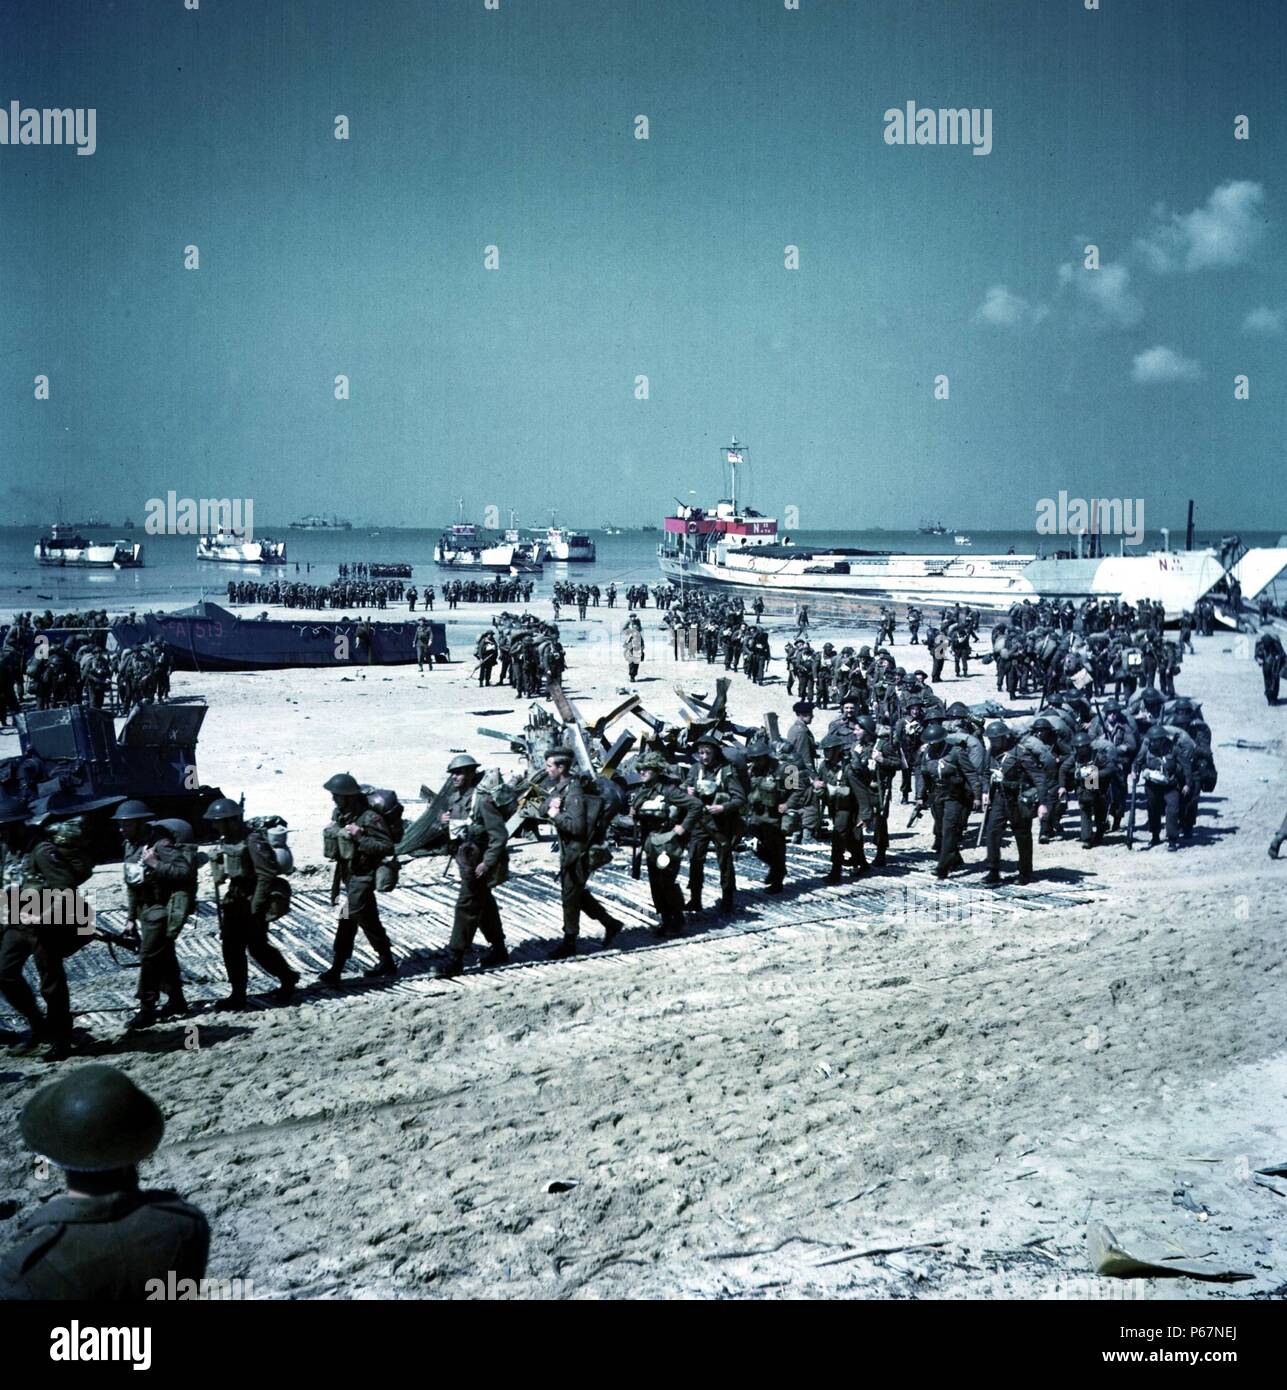 Kanadische Soldaten am Juno Beach, Normandie bereitgestellt wird. Dieses Bild wurde nach der Landung der ersten d-Day aufgenommen. In 1944 datiert. Stockfoto